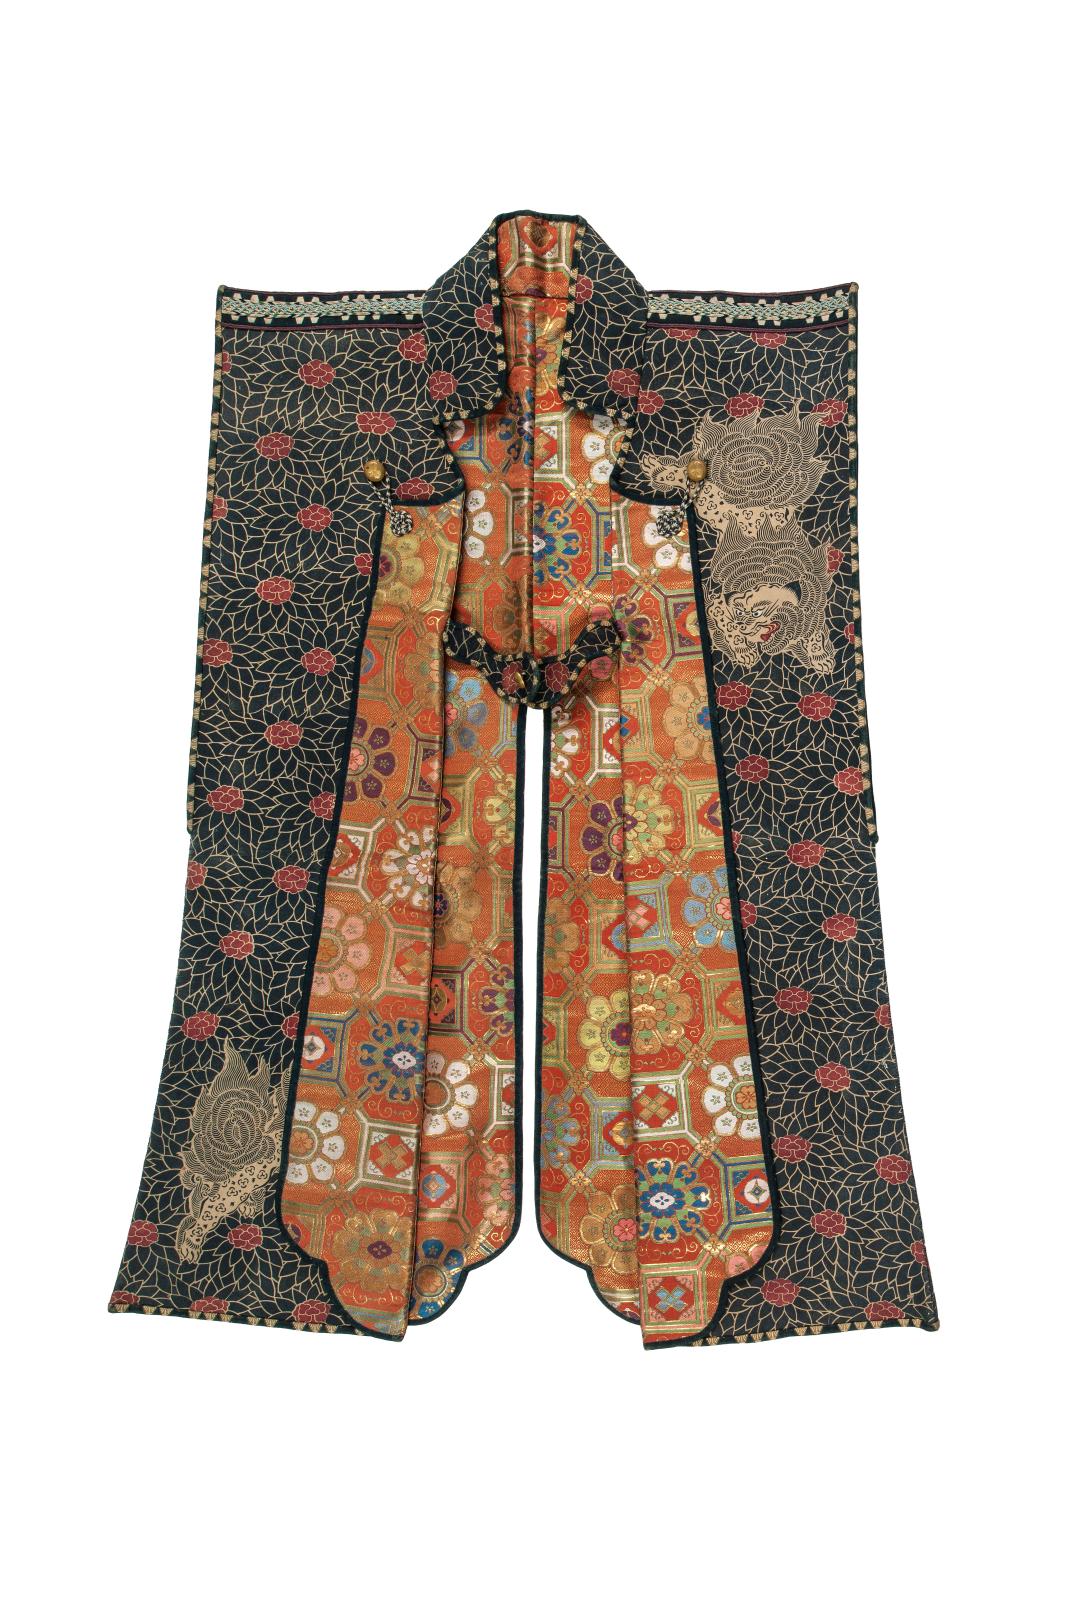 Fin de l’époque d’Edo (1603-1868)-début de l’ère Meiji (1868-1912), XIXe siècle. Veste d’armure (jinbaori), peau animale imprimée, façonné de soie et 